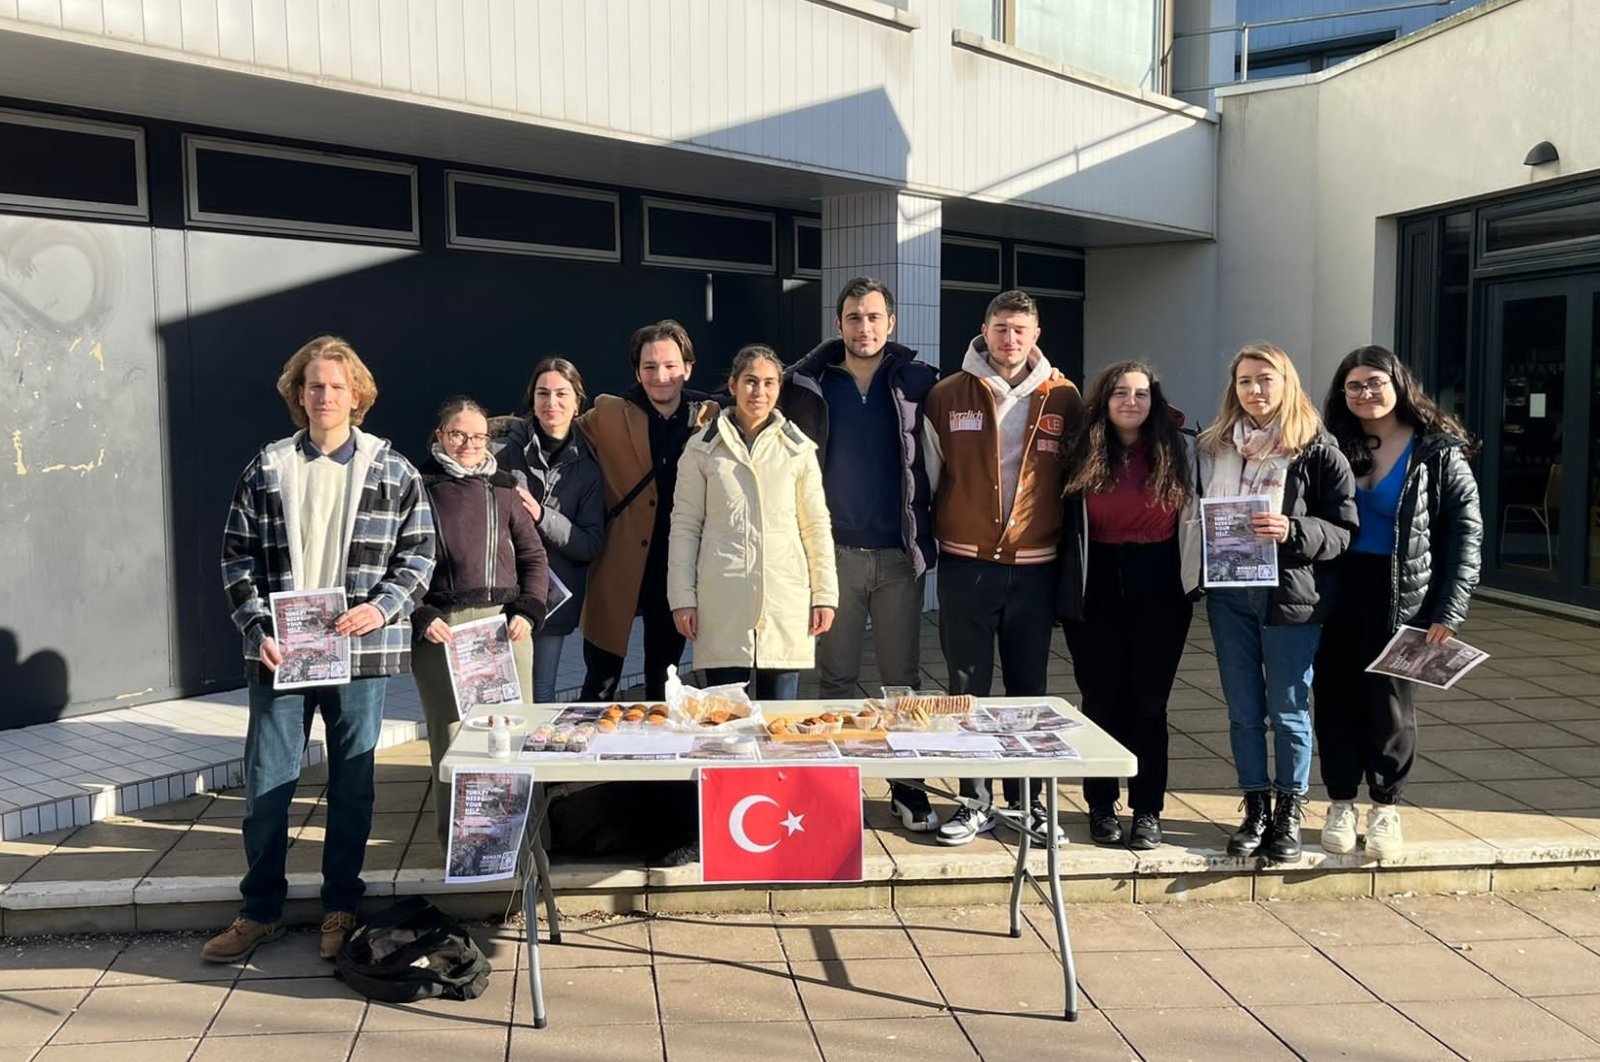 Mahasiswa Turki di Inggris menggalang dana di bazaar untuk korban gempa